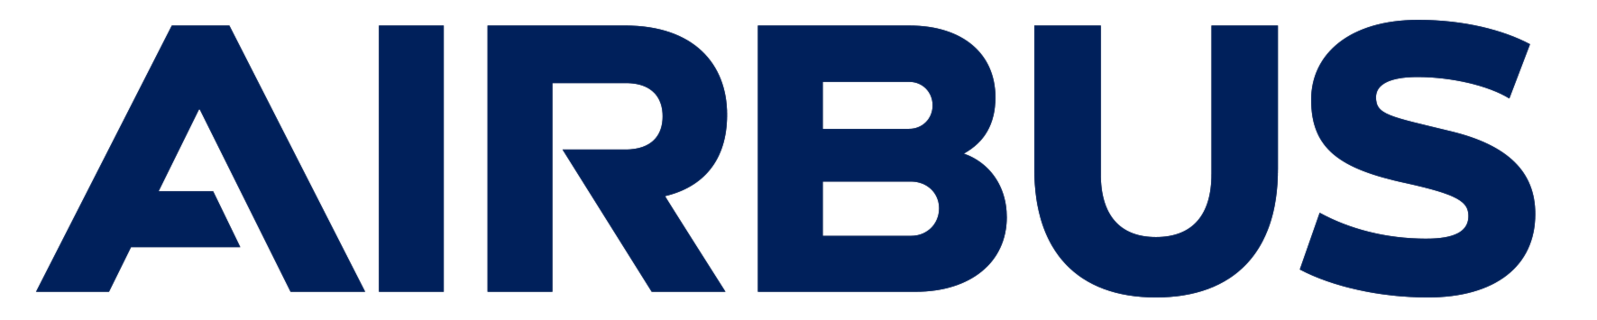 Airbus logo | Mecanizados Carmona